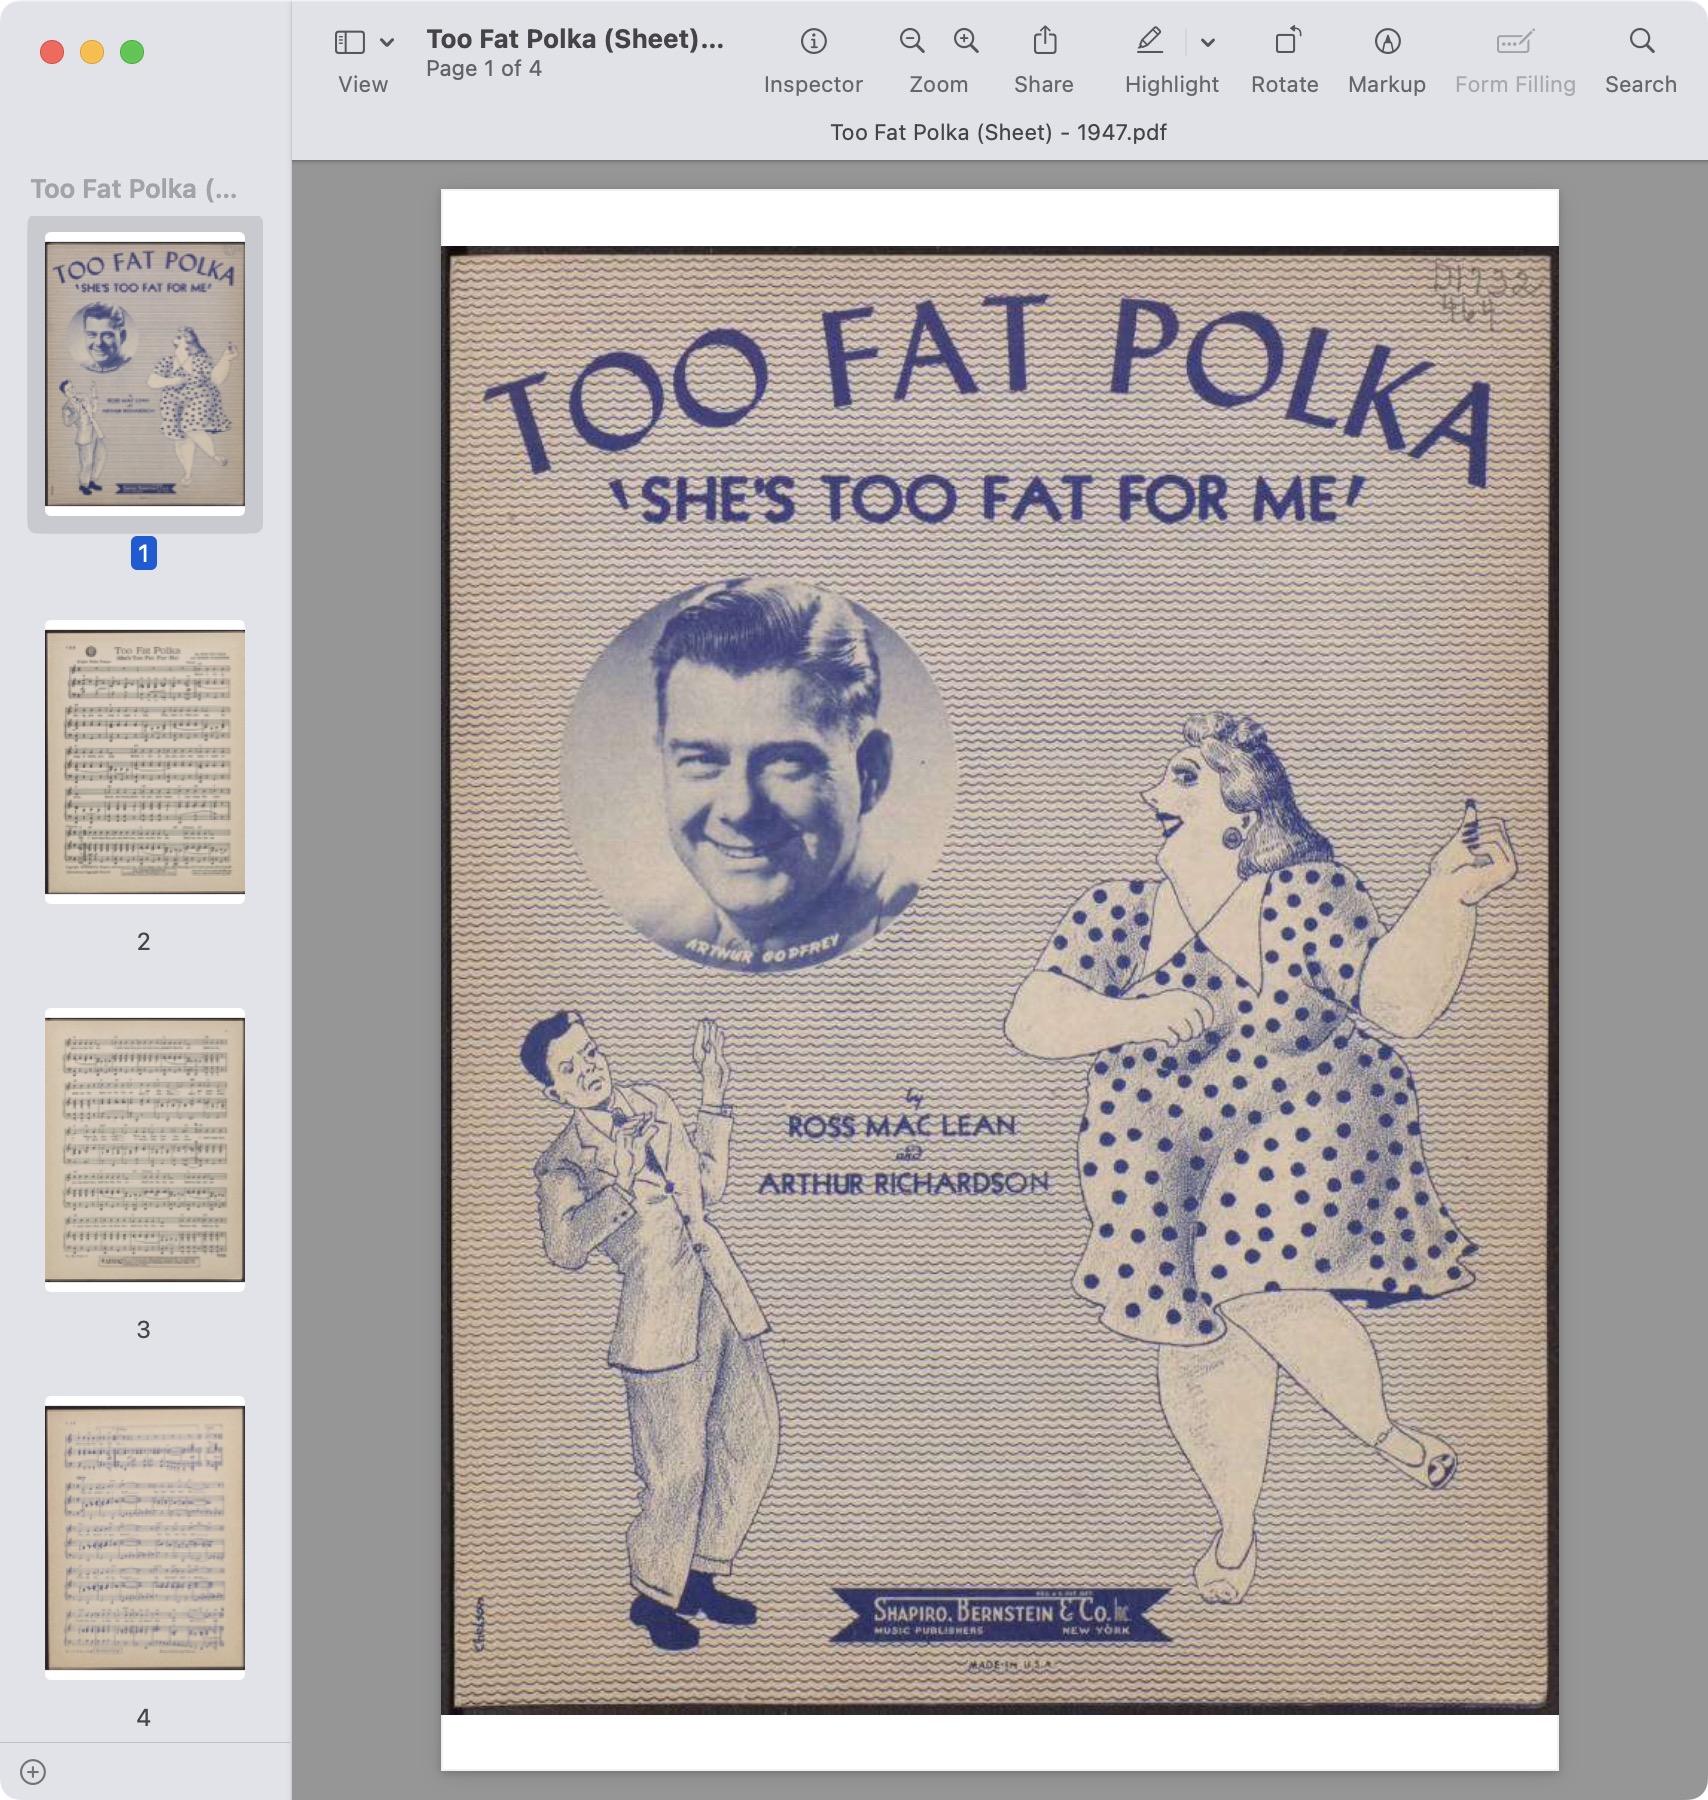 Too Fat Polka (Sheet) - 1947.jpg